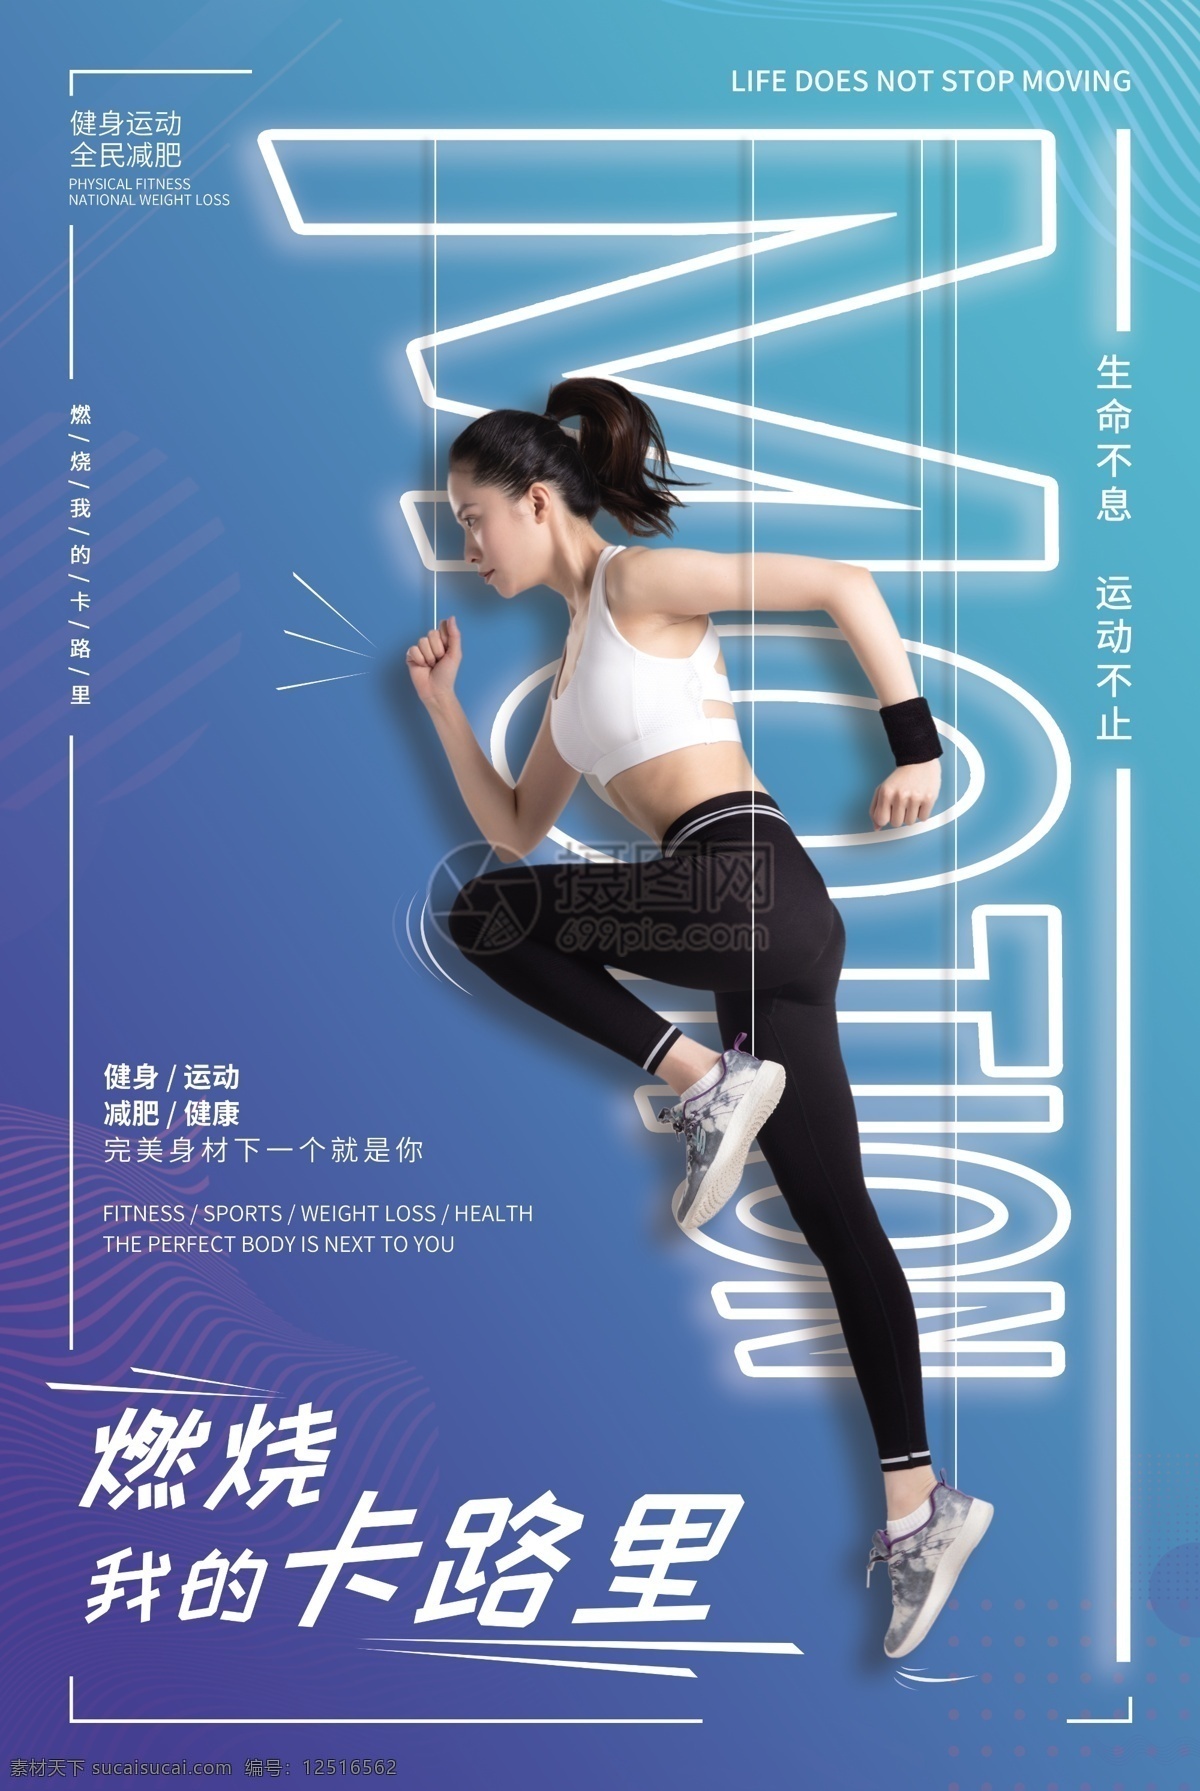 蓝色 燃烧 的卡 路里 创意 运动 海报 奔跑 健身 跑步 运动健身 运动健身海报 型男健身 健身海报 健身房